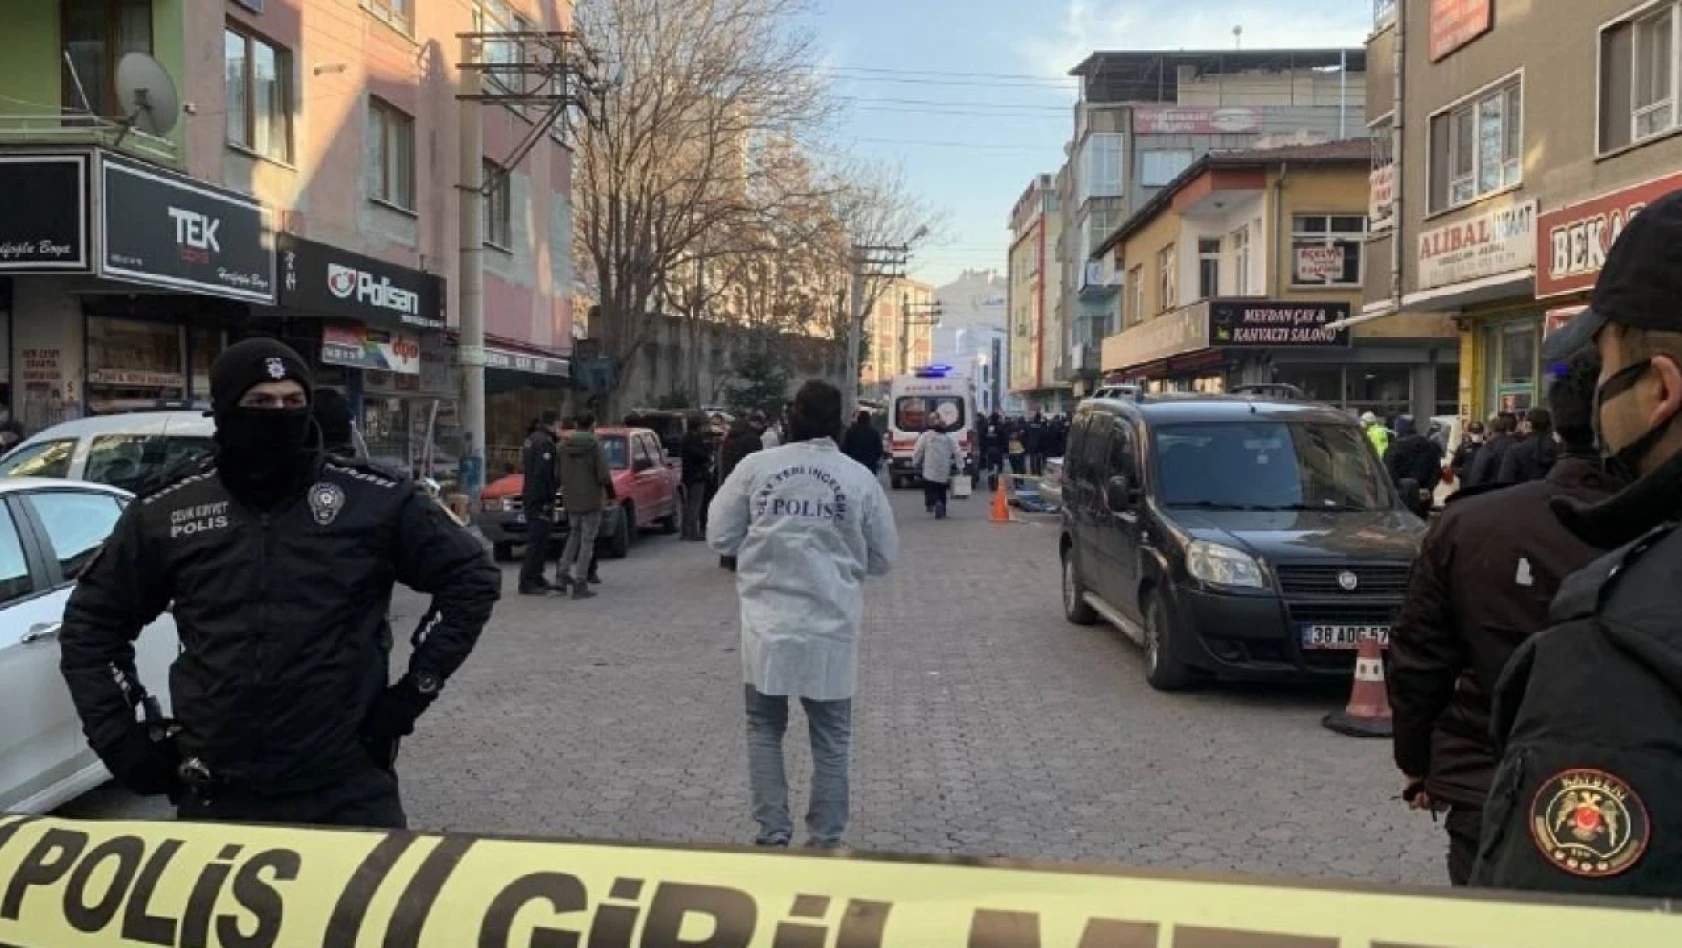 Kayseri'de 3 kişinin öldürüldüğü olayda yeni gelişme yaşandı